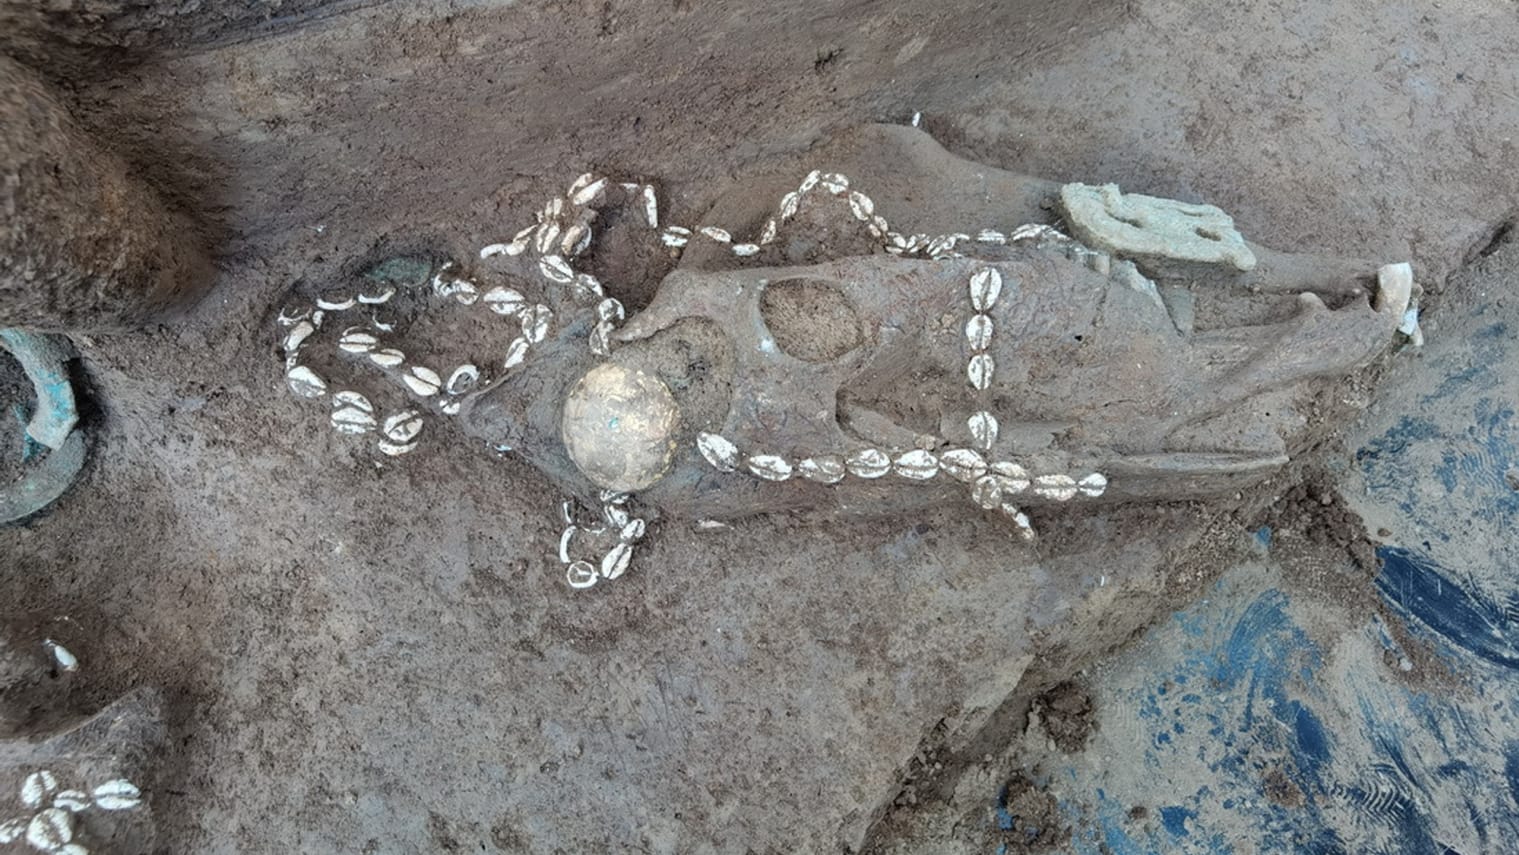 У Китаї археологи знайшли комплекс гробниць віком 3 тисячі років